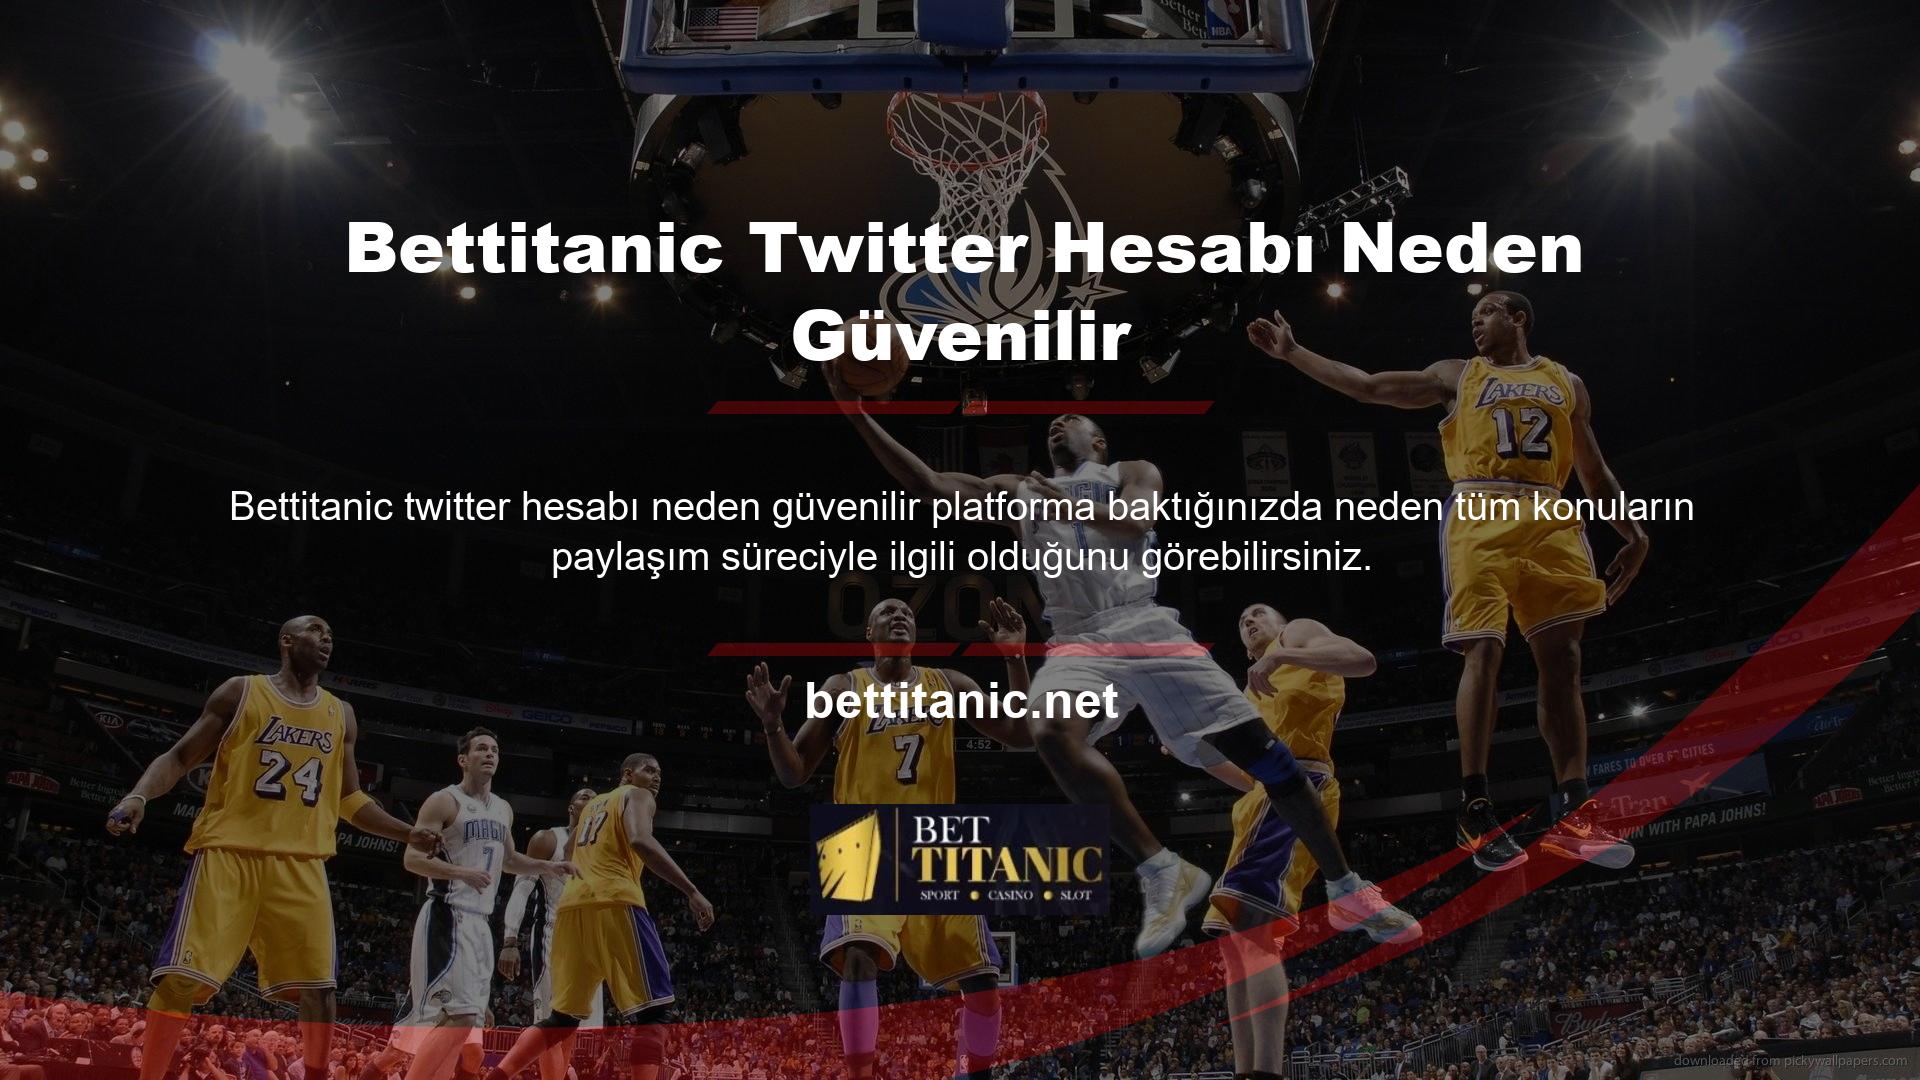 Bettitanic neden Twitter hesabı kullanıyor? Web sitesi güncellemeleri, etkinlikler ve daha fazlası için resmi Twitter hesabımızı takip edebilirsiniz